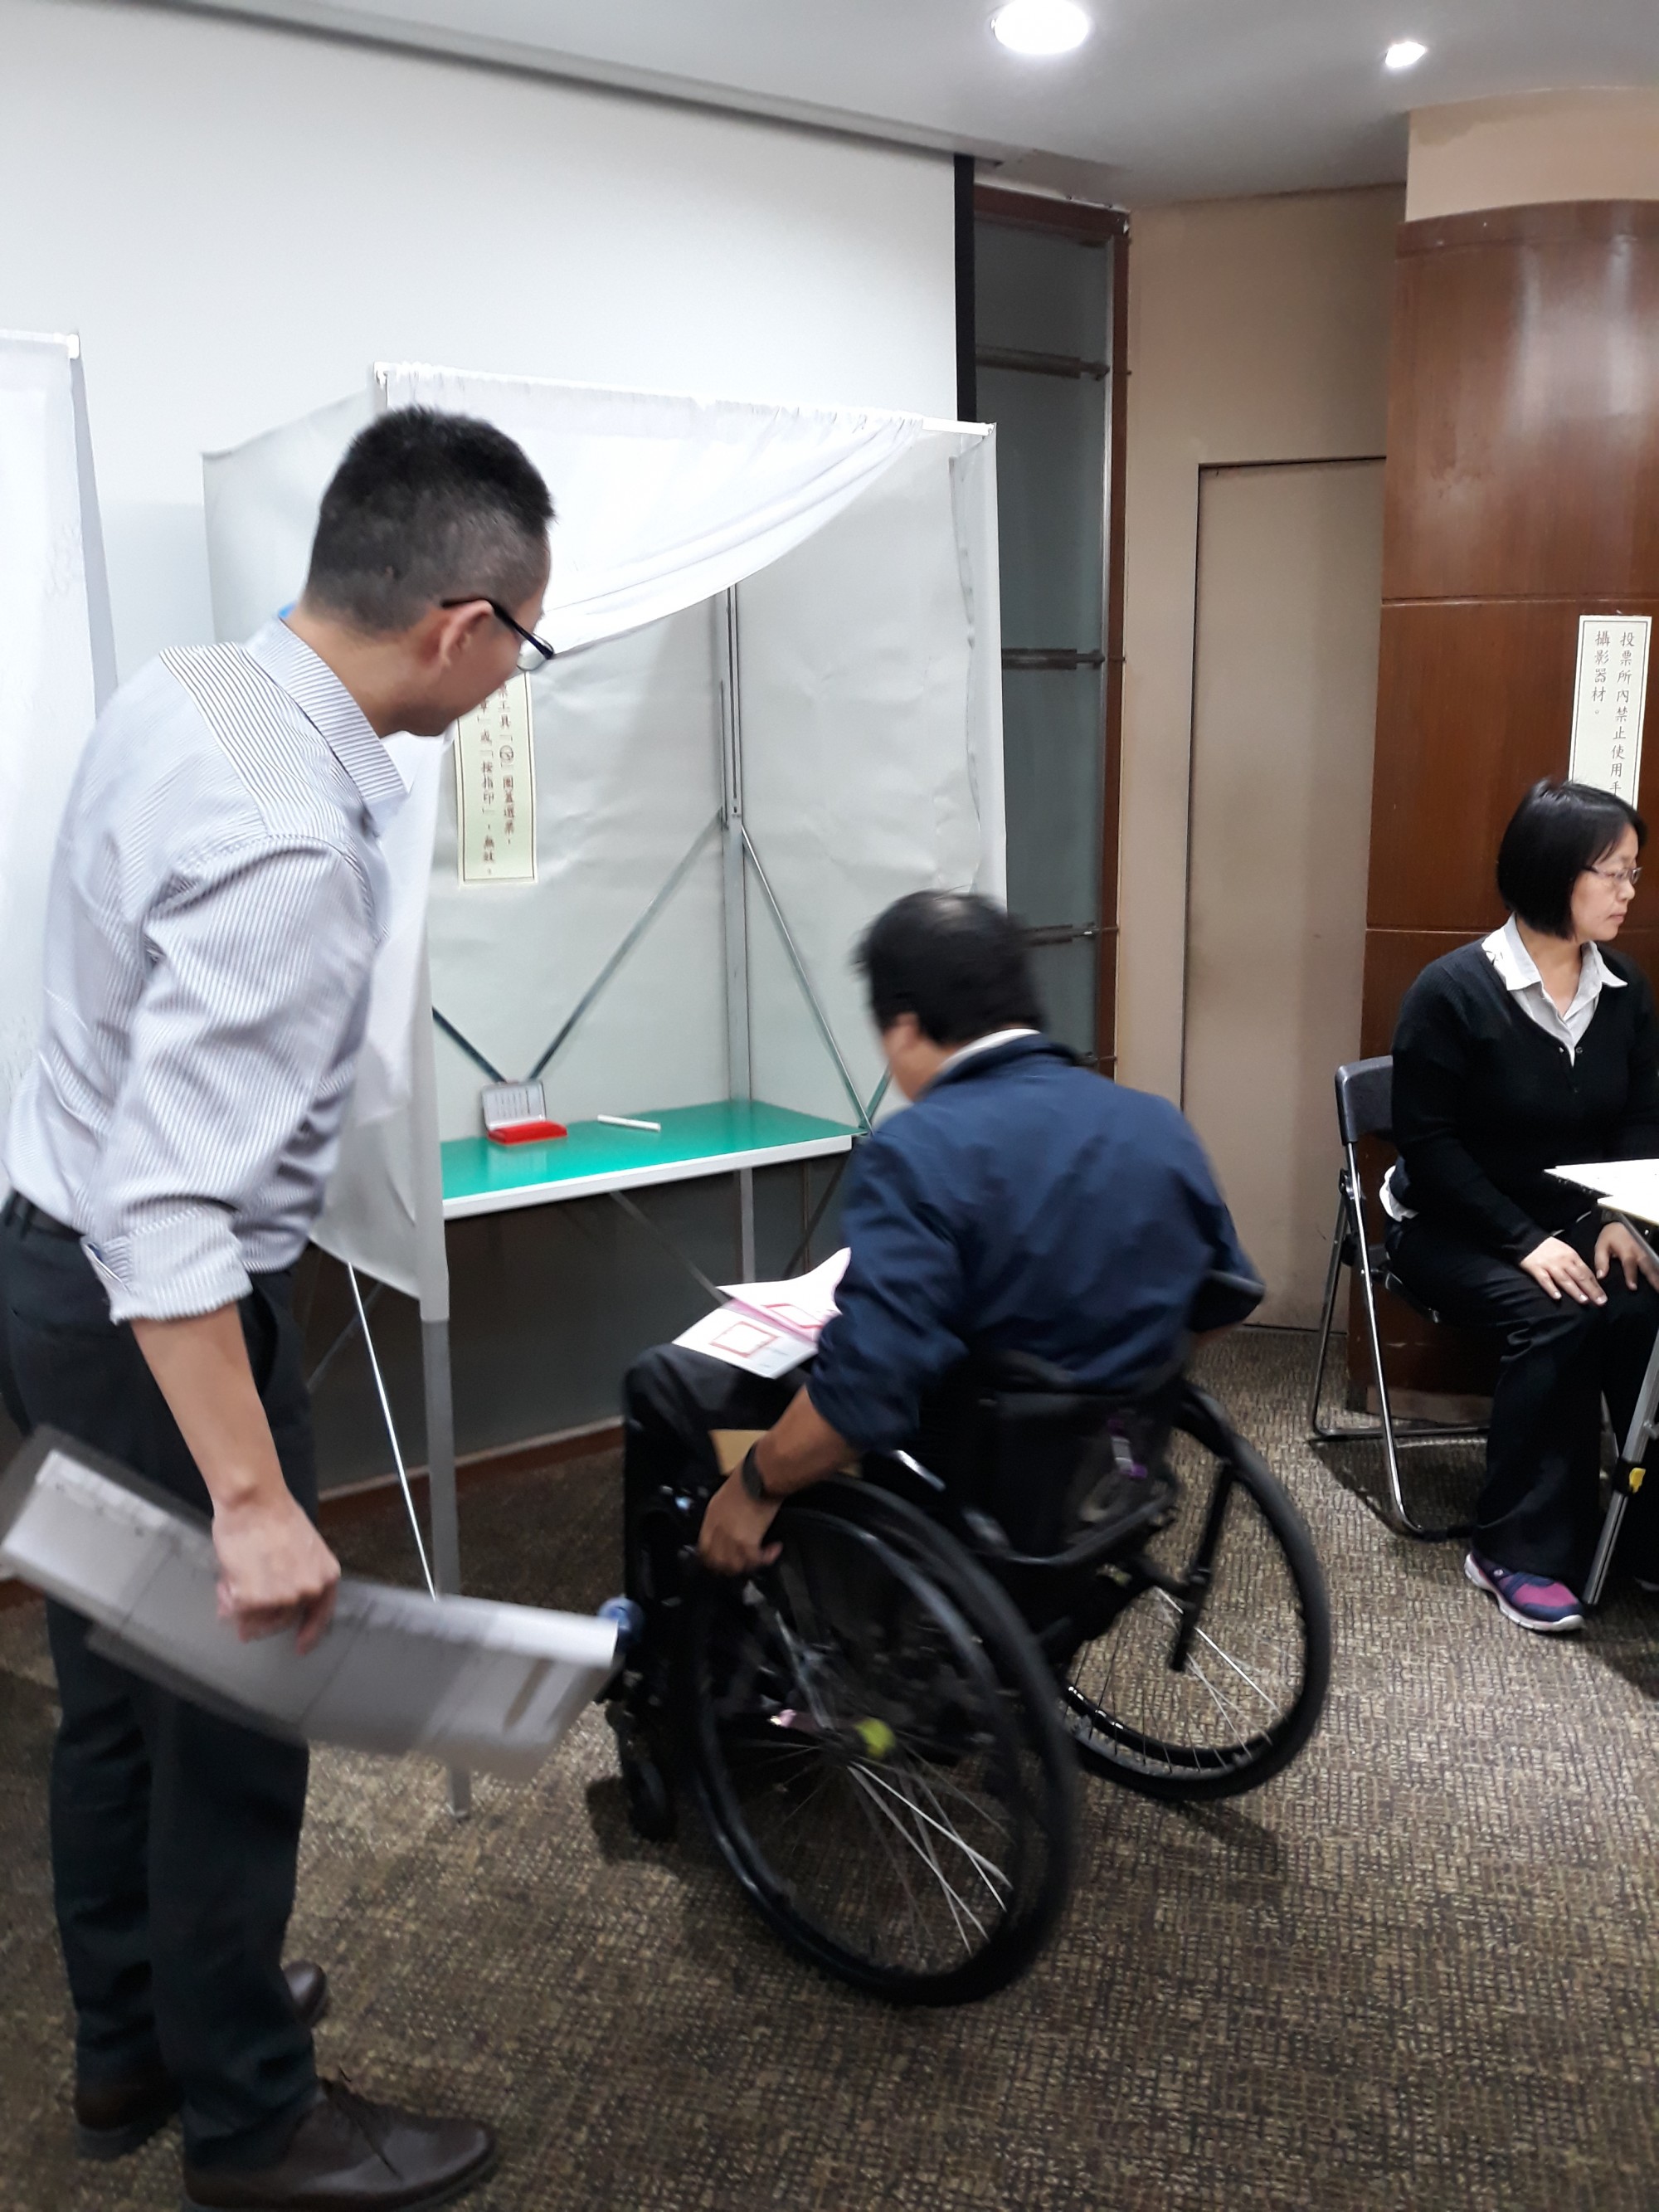 身障者模擬投票-前往圈票處